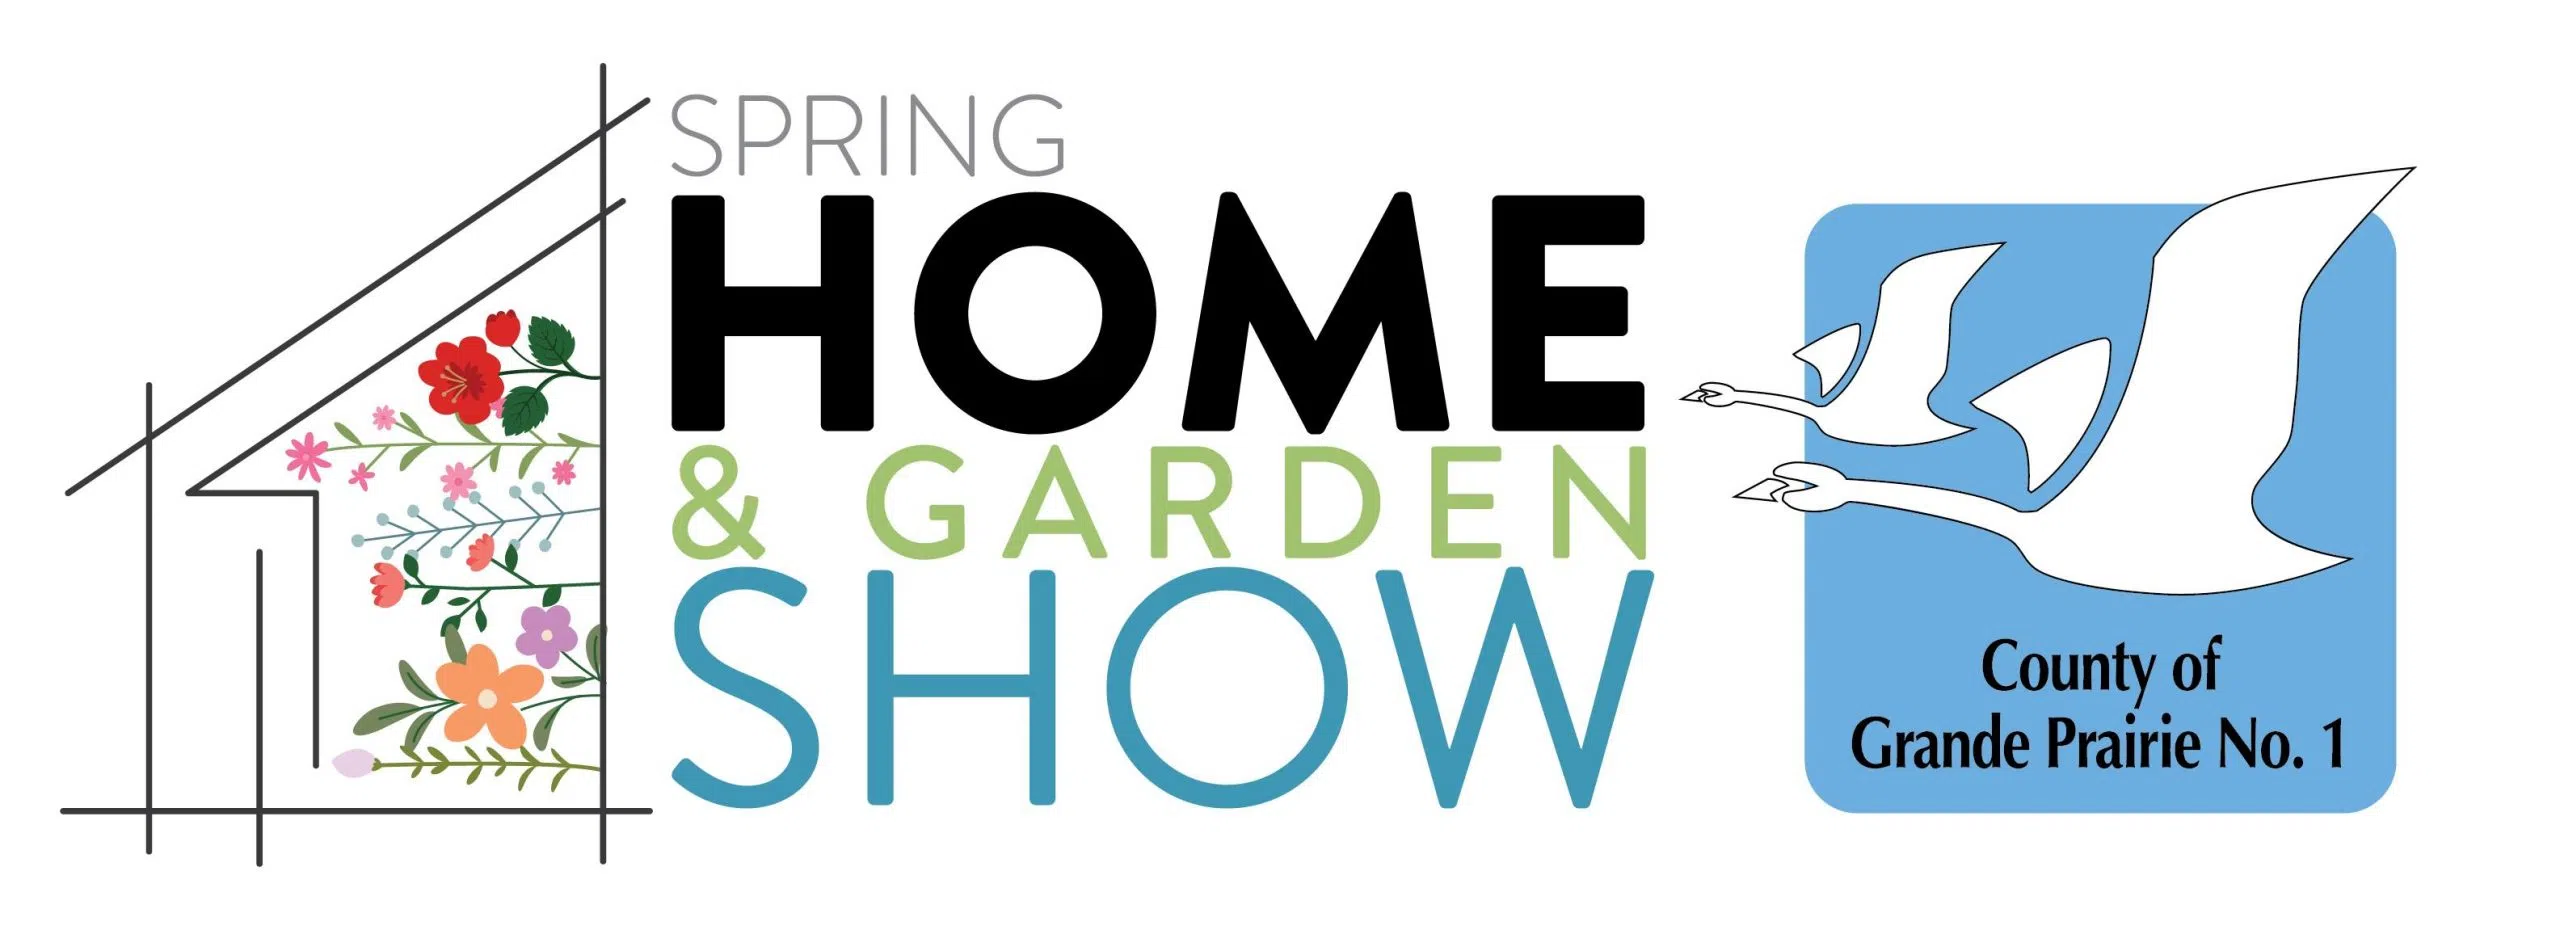 Spring Home & Garden Show EverythingGP